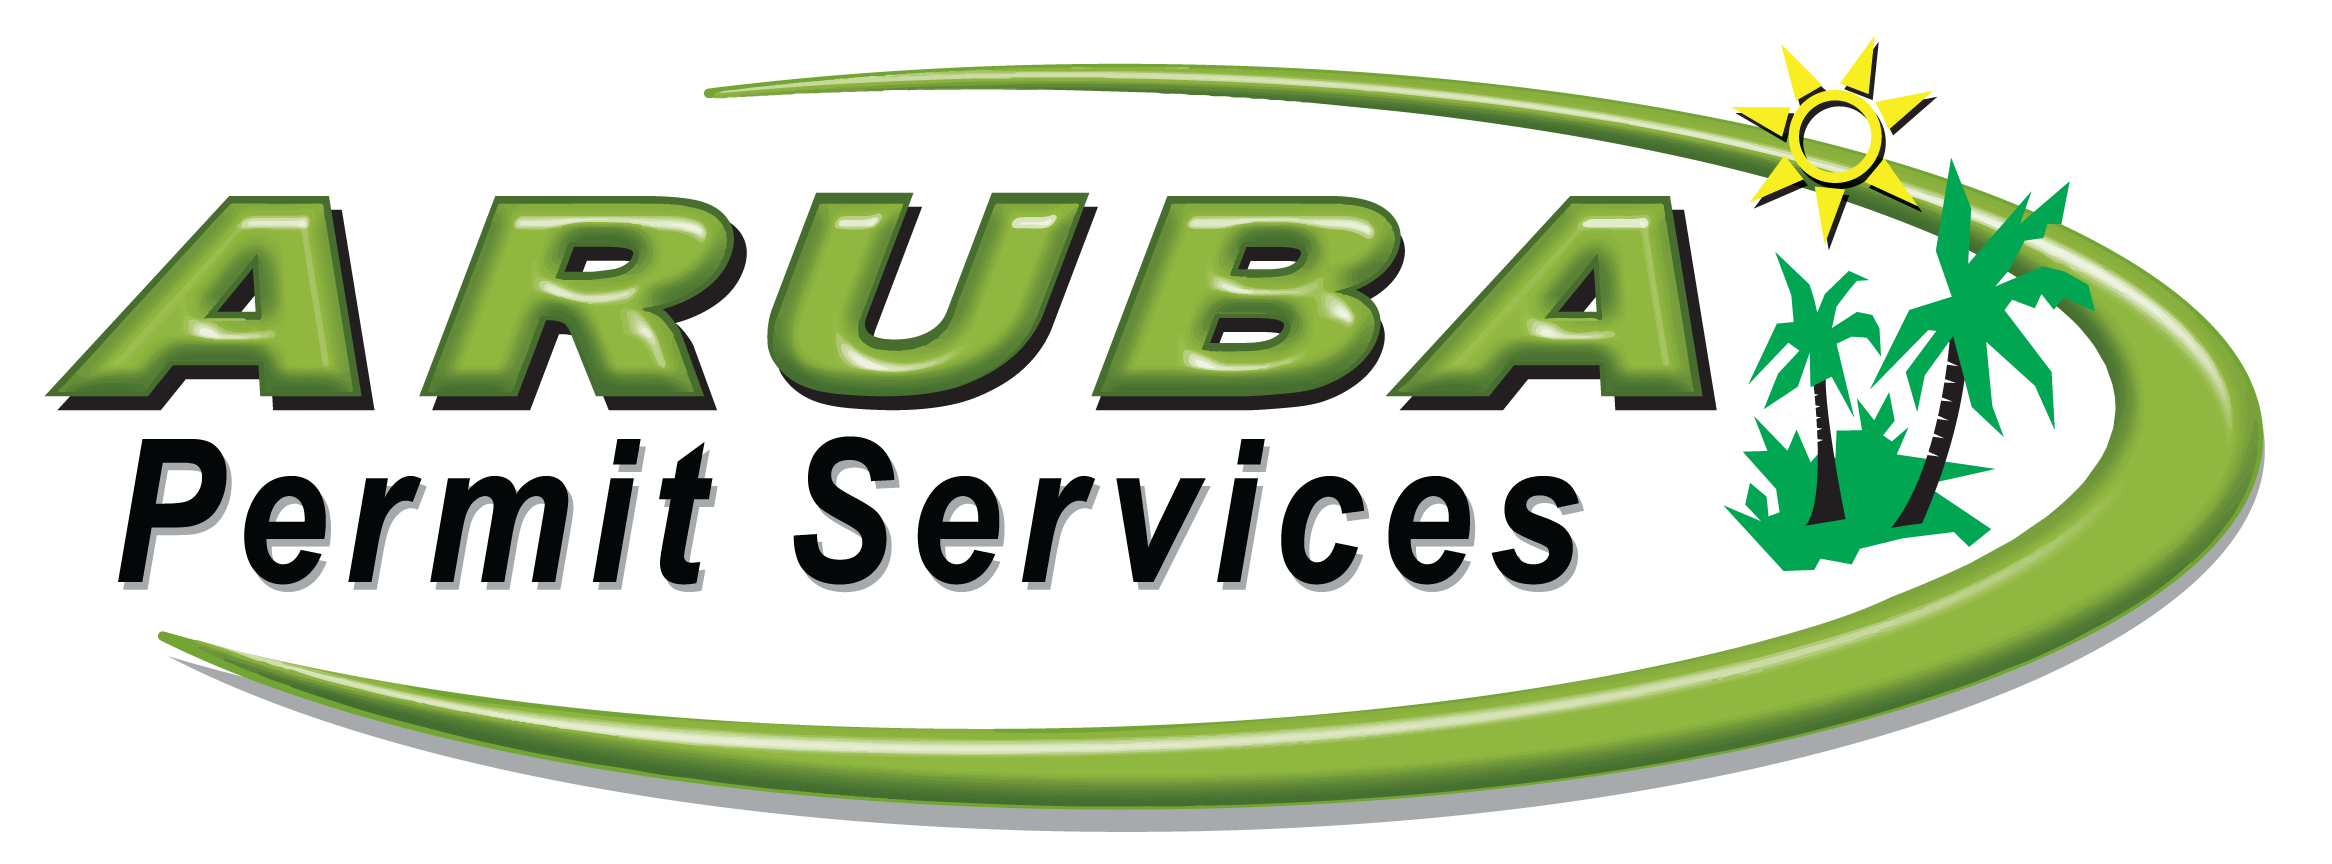 Aruba Services